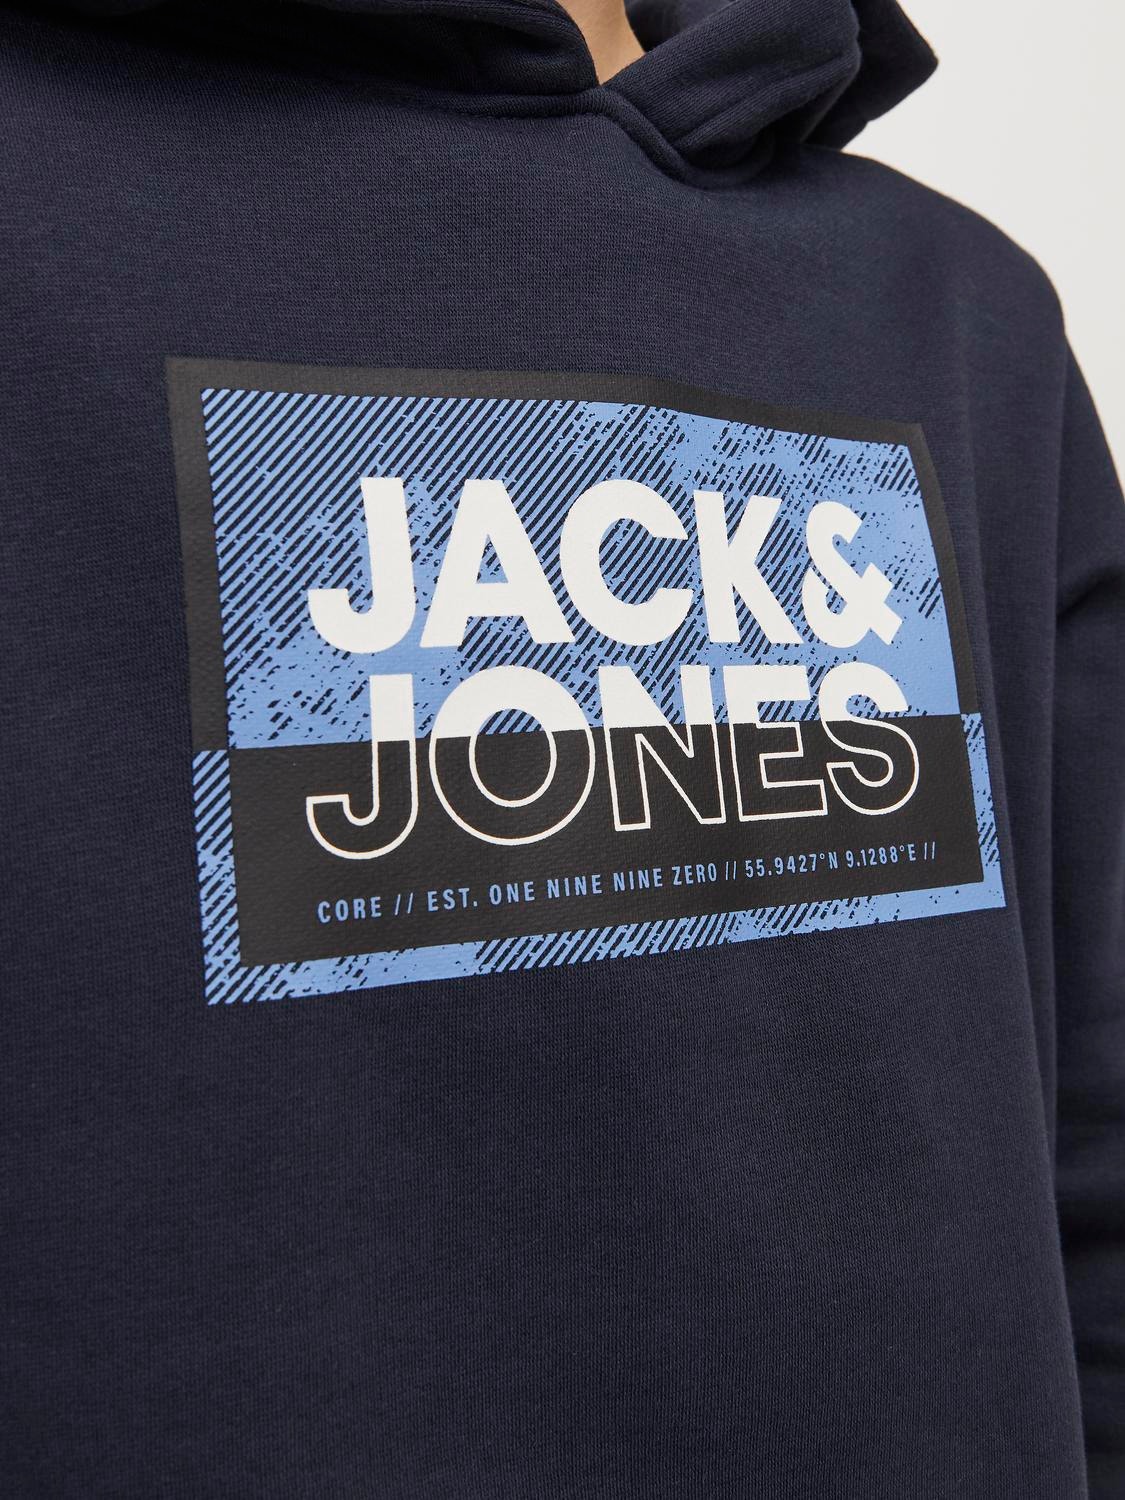 Jack & Jones Sweat à capuche Imprimé Pour les garçons -Navy Blazer - 12254120